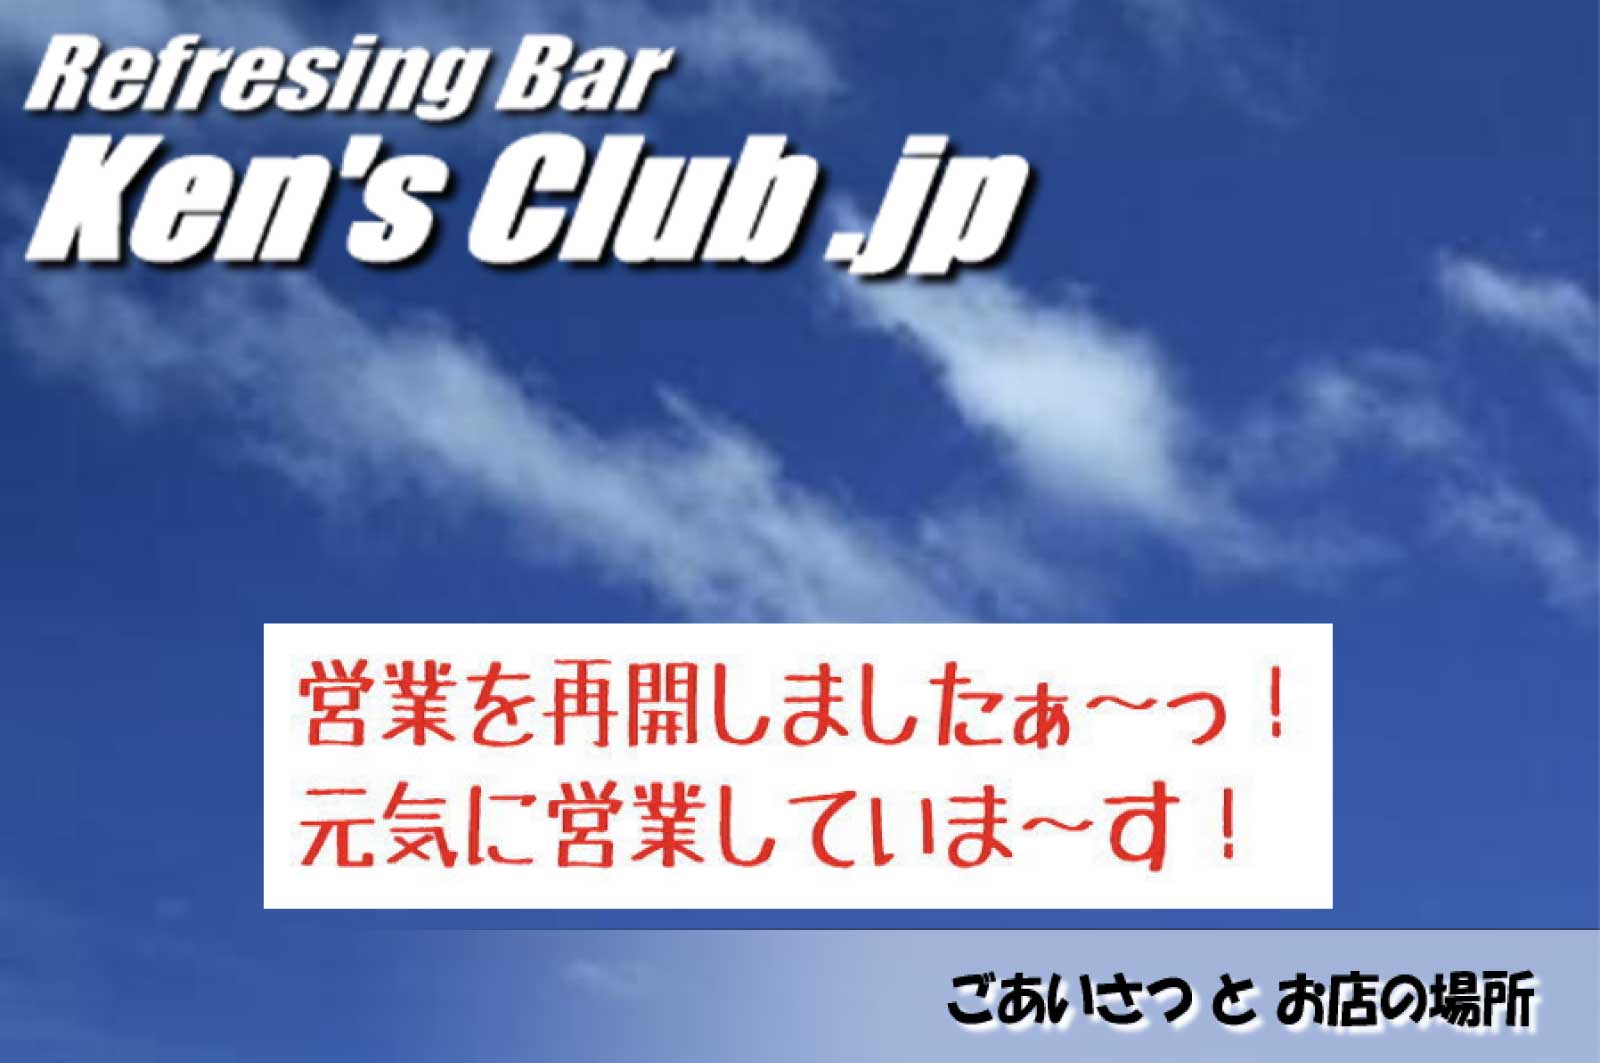 Ken's Club .jp